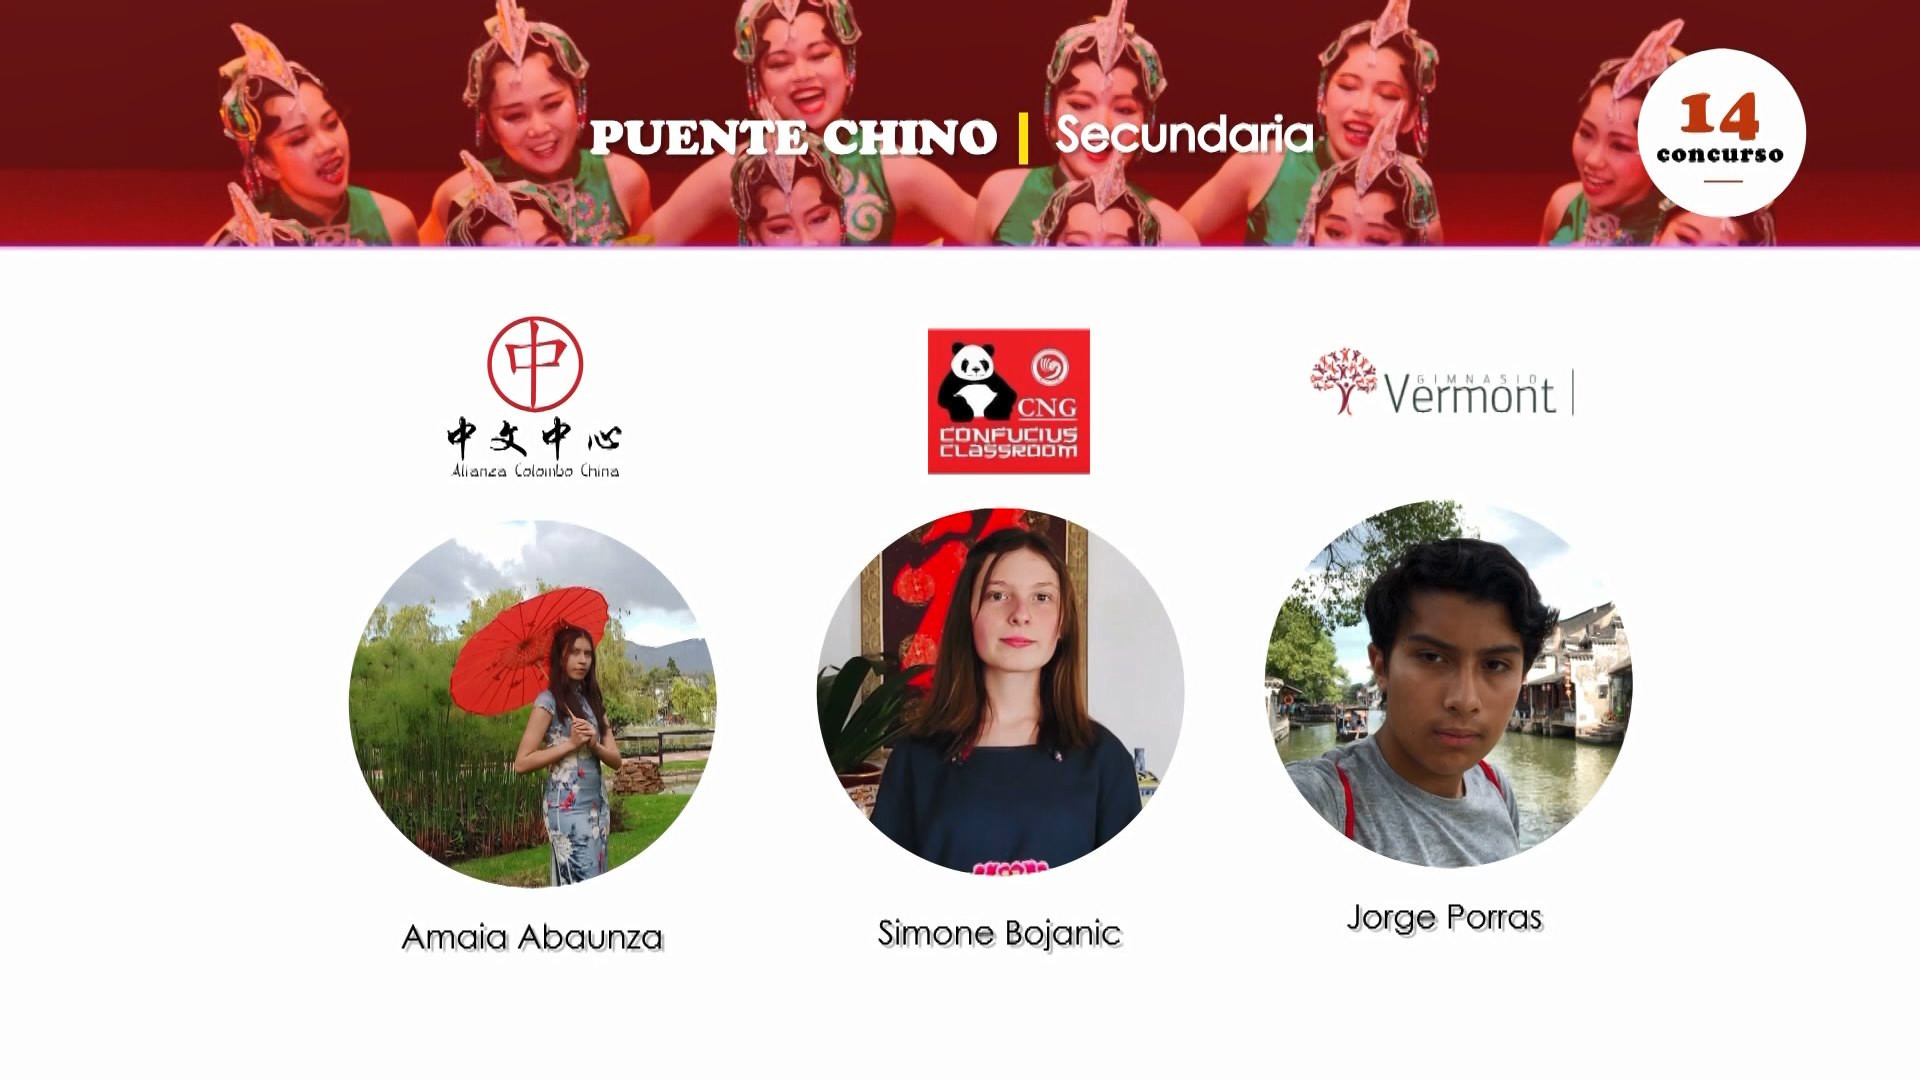 Entregan premios del 14 concurso Puente Chino en Colombia